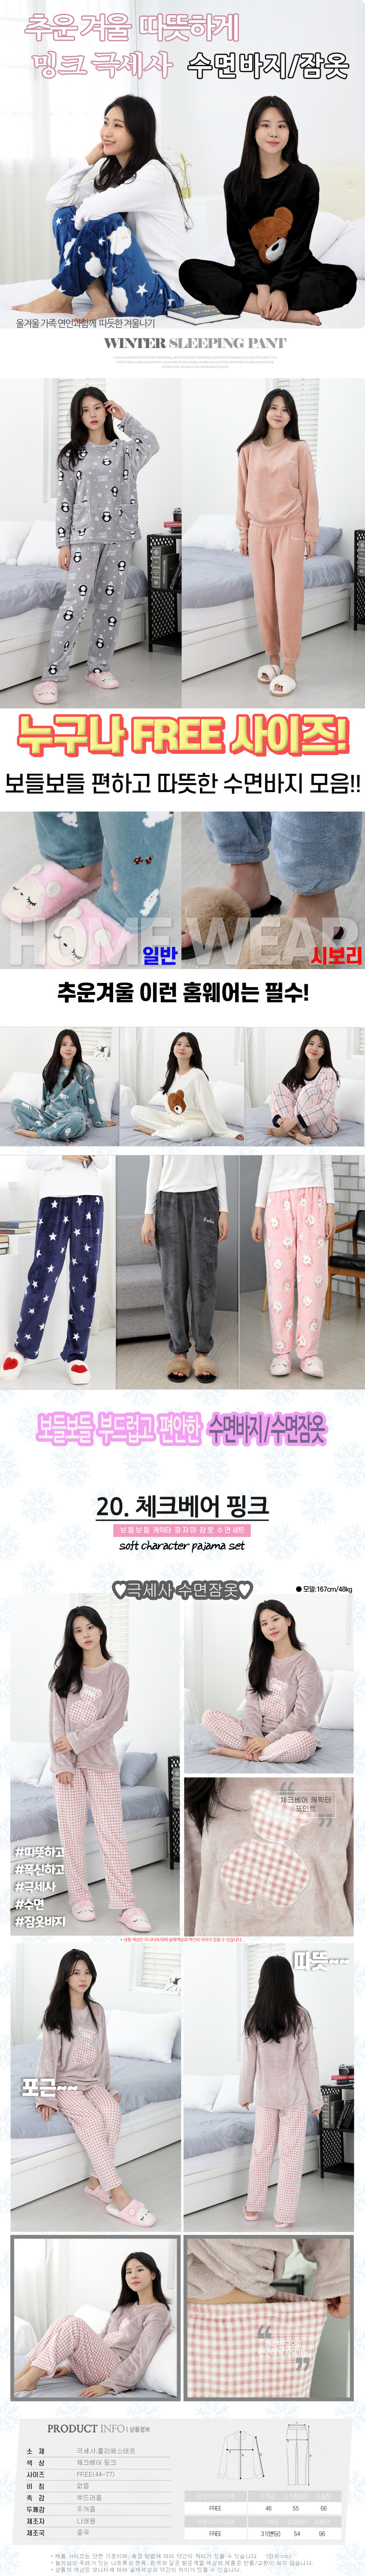 sleeping_pajamas_set_20.jpg